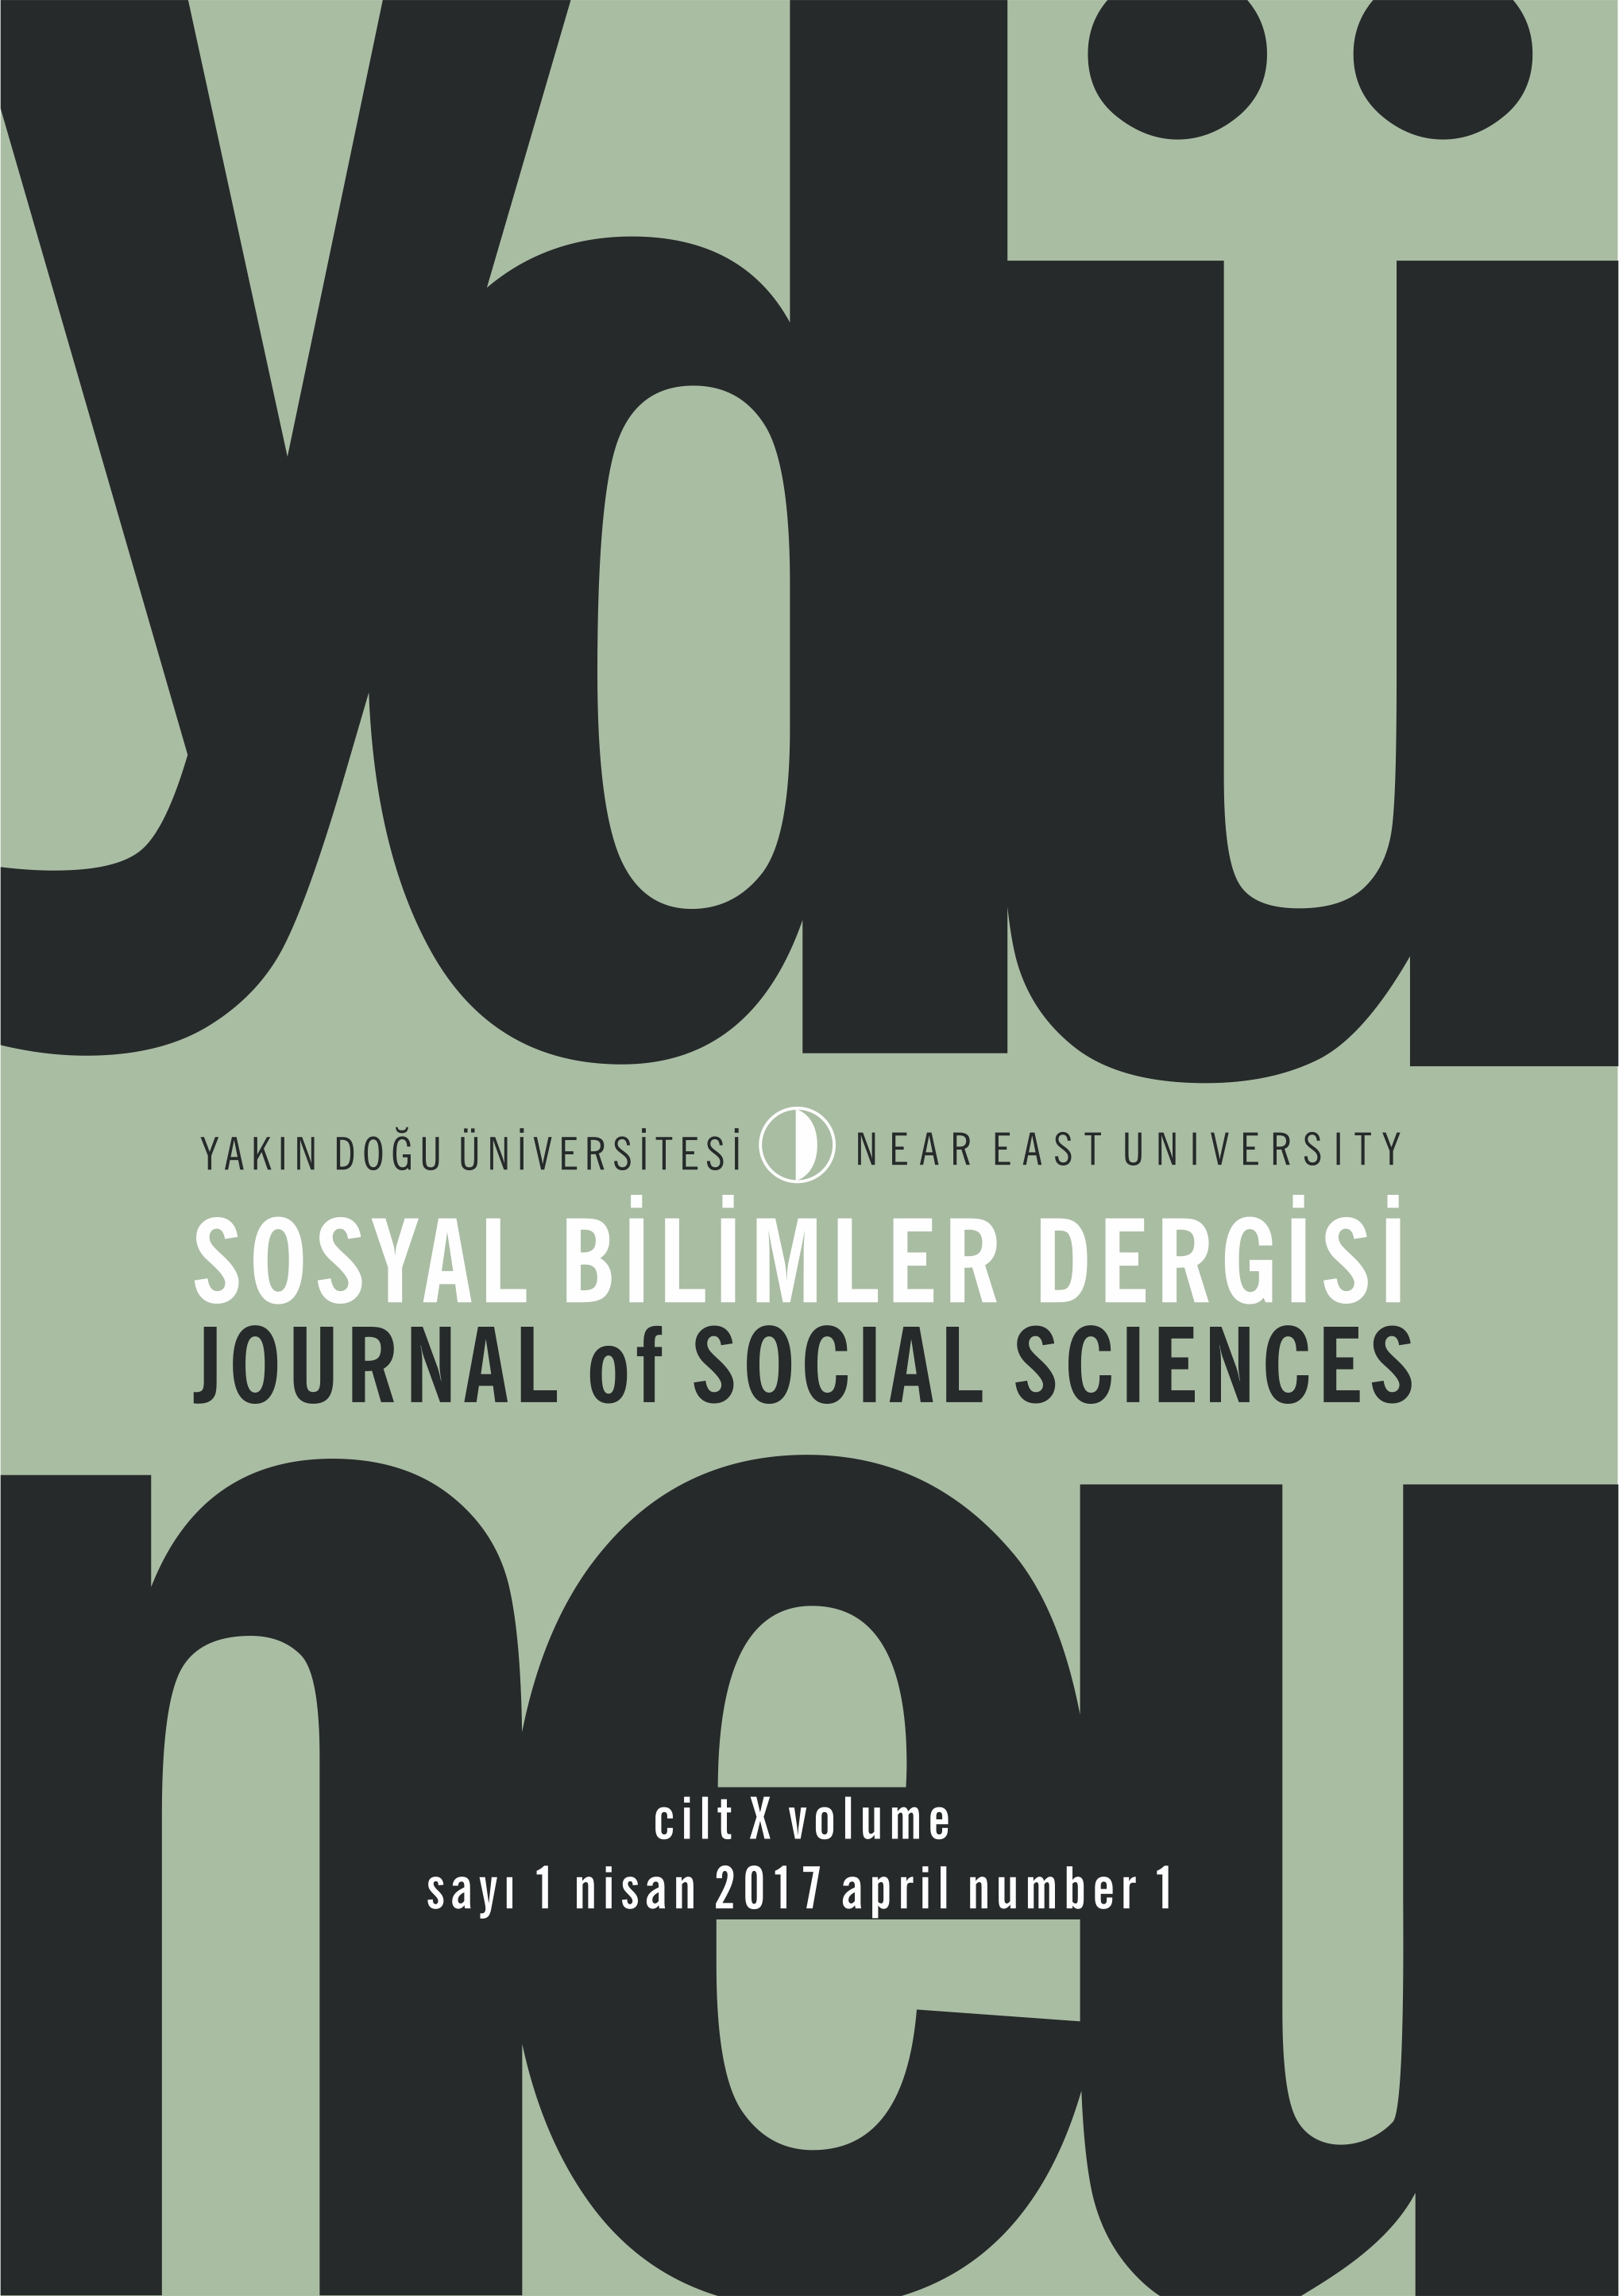 					Cilt 10 Sayı 1 (2017): Yakın Doğu Üniversitesi Sosyal Bilimler Dergisi Gör
				